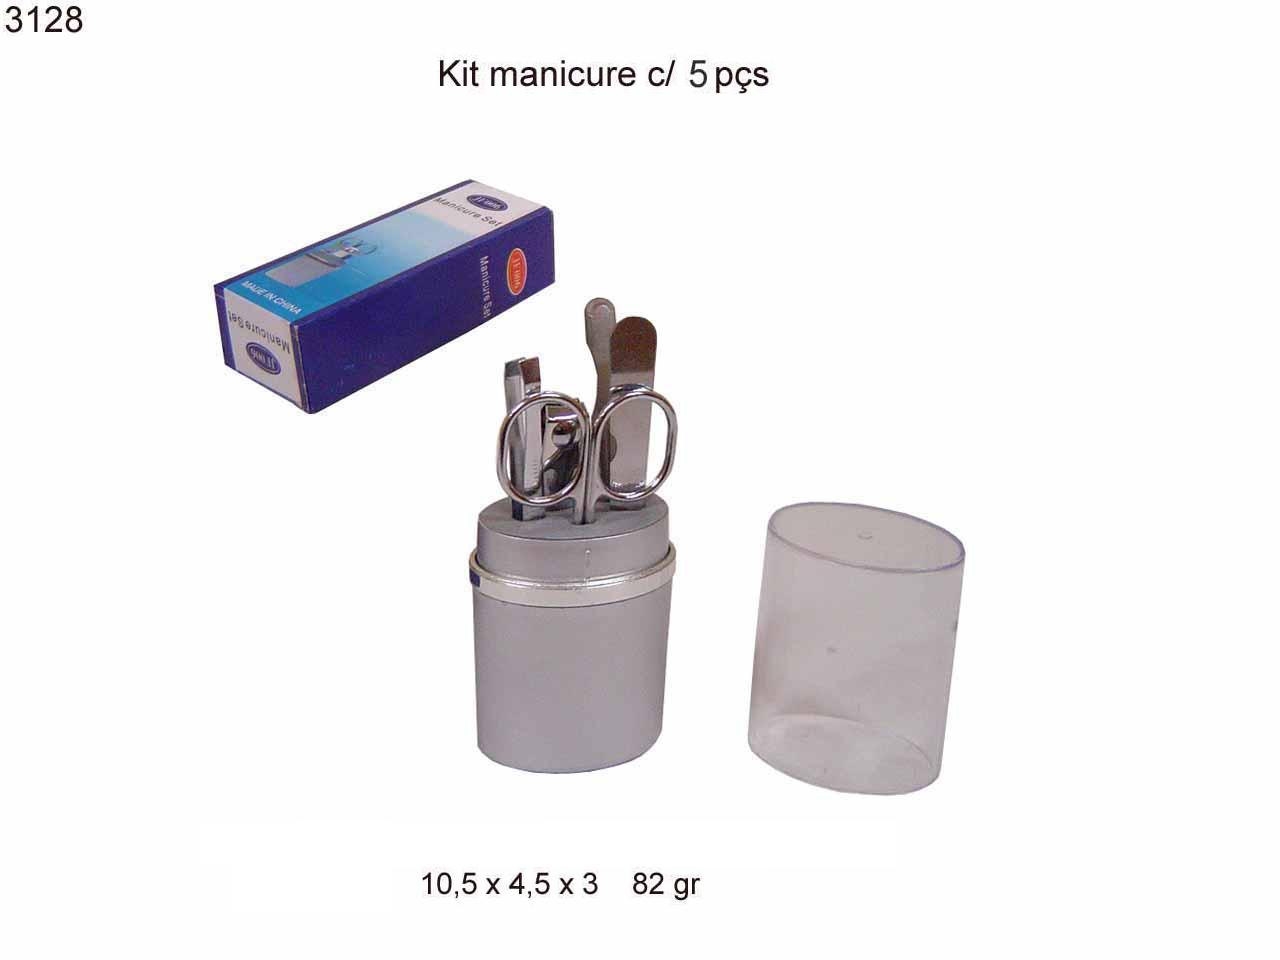 Kit manicure c/ 5 pcs (3128)